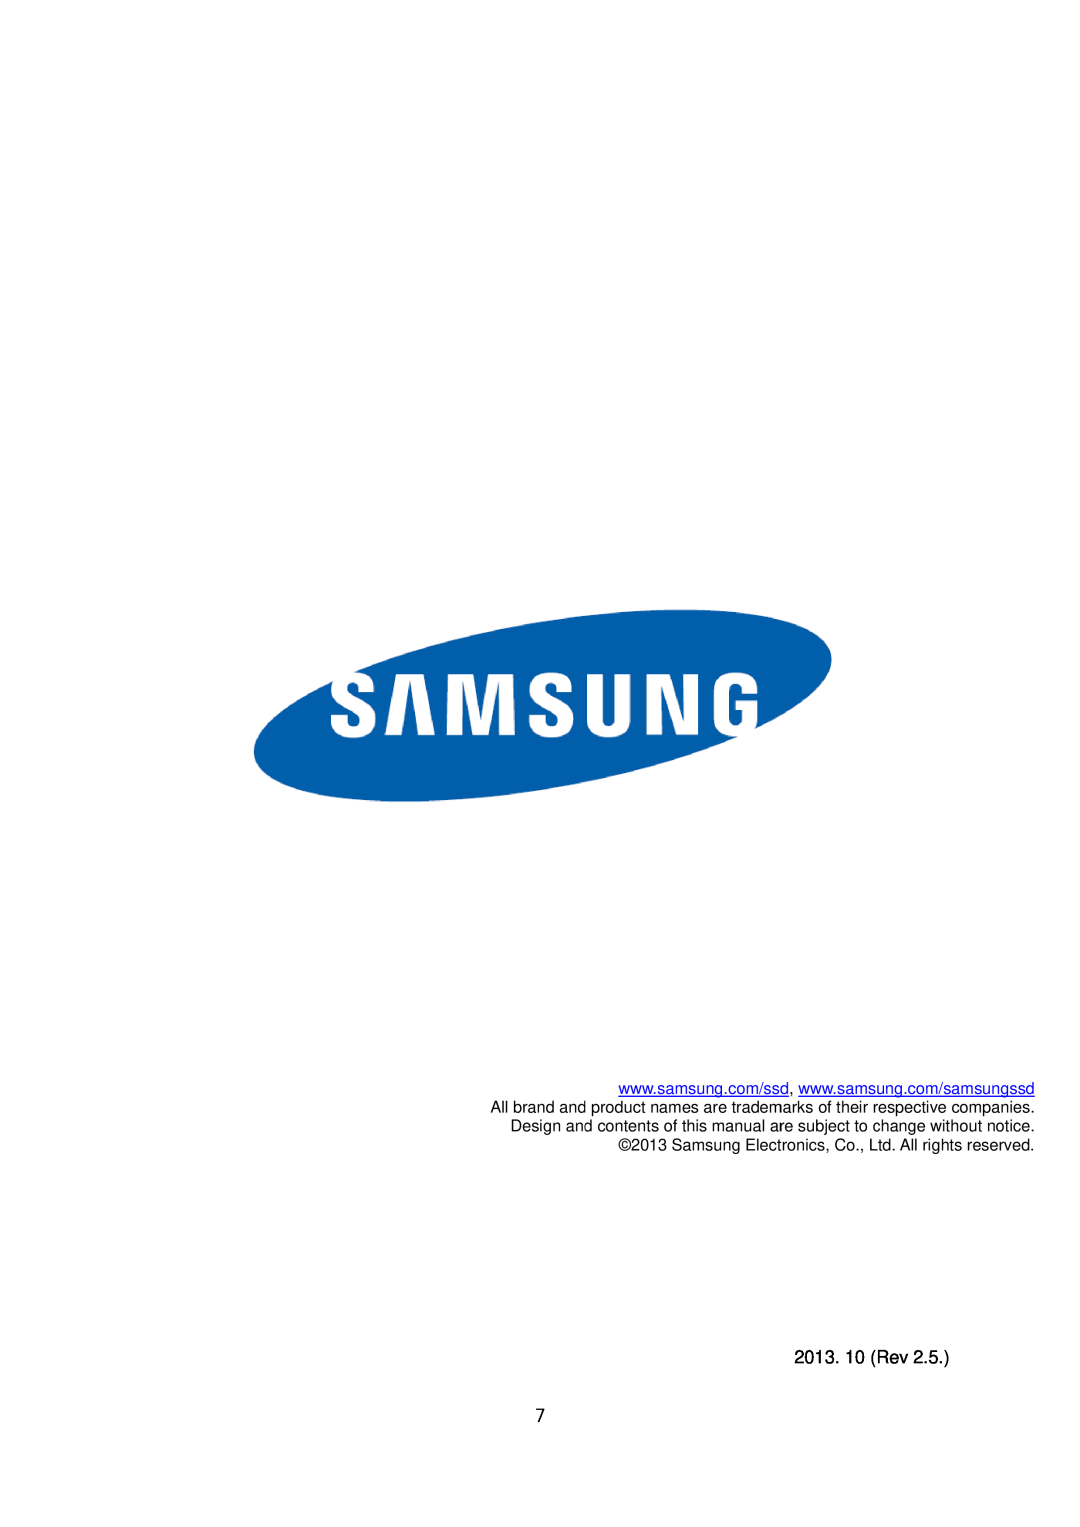 Samsung MZ-7TD256KW, MZ-7TD500BW, MZ-7TD250KW, MZ-7TD120KW, MZ-7TD128BW, MZ-7TD120BW, MZ-7TD120Z, MZ-7TD512KW manual 2013. 10 Rev 